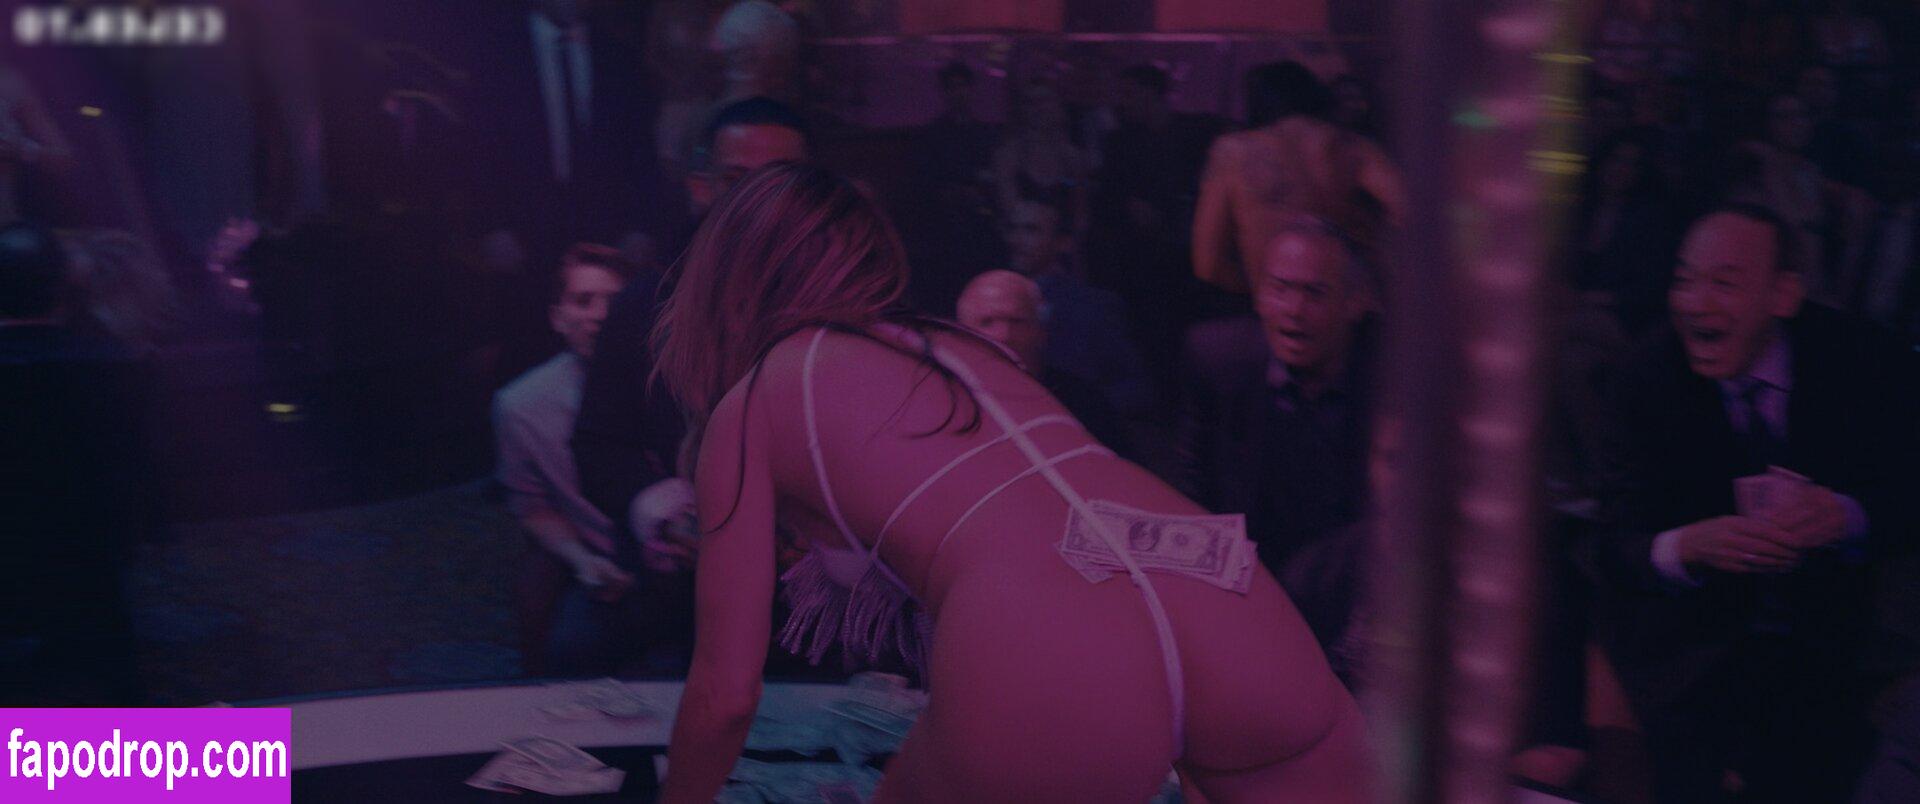 Jennifer Lopez / JLo / jennifer_jlo leak of nude photo #1950 from OnlyFans or Patreon